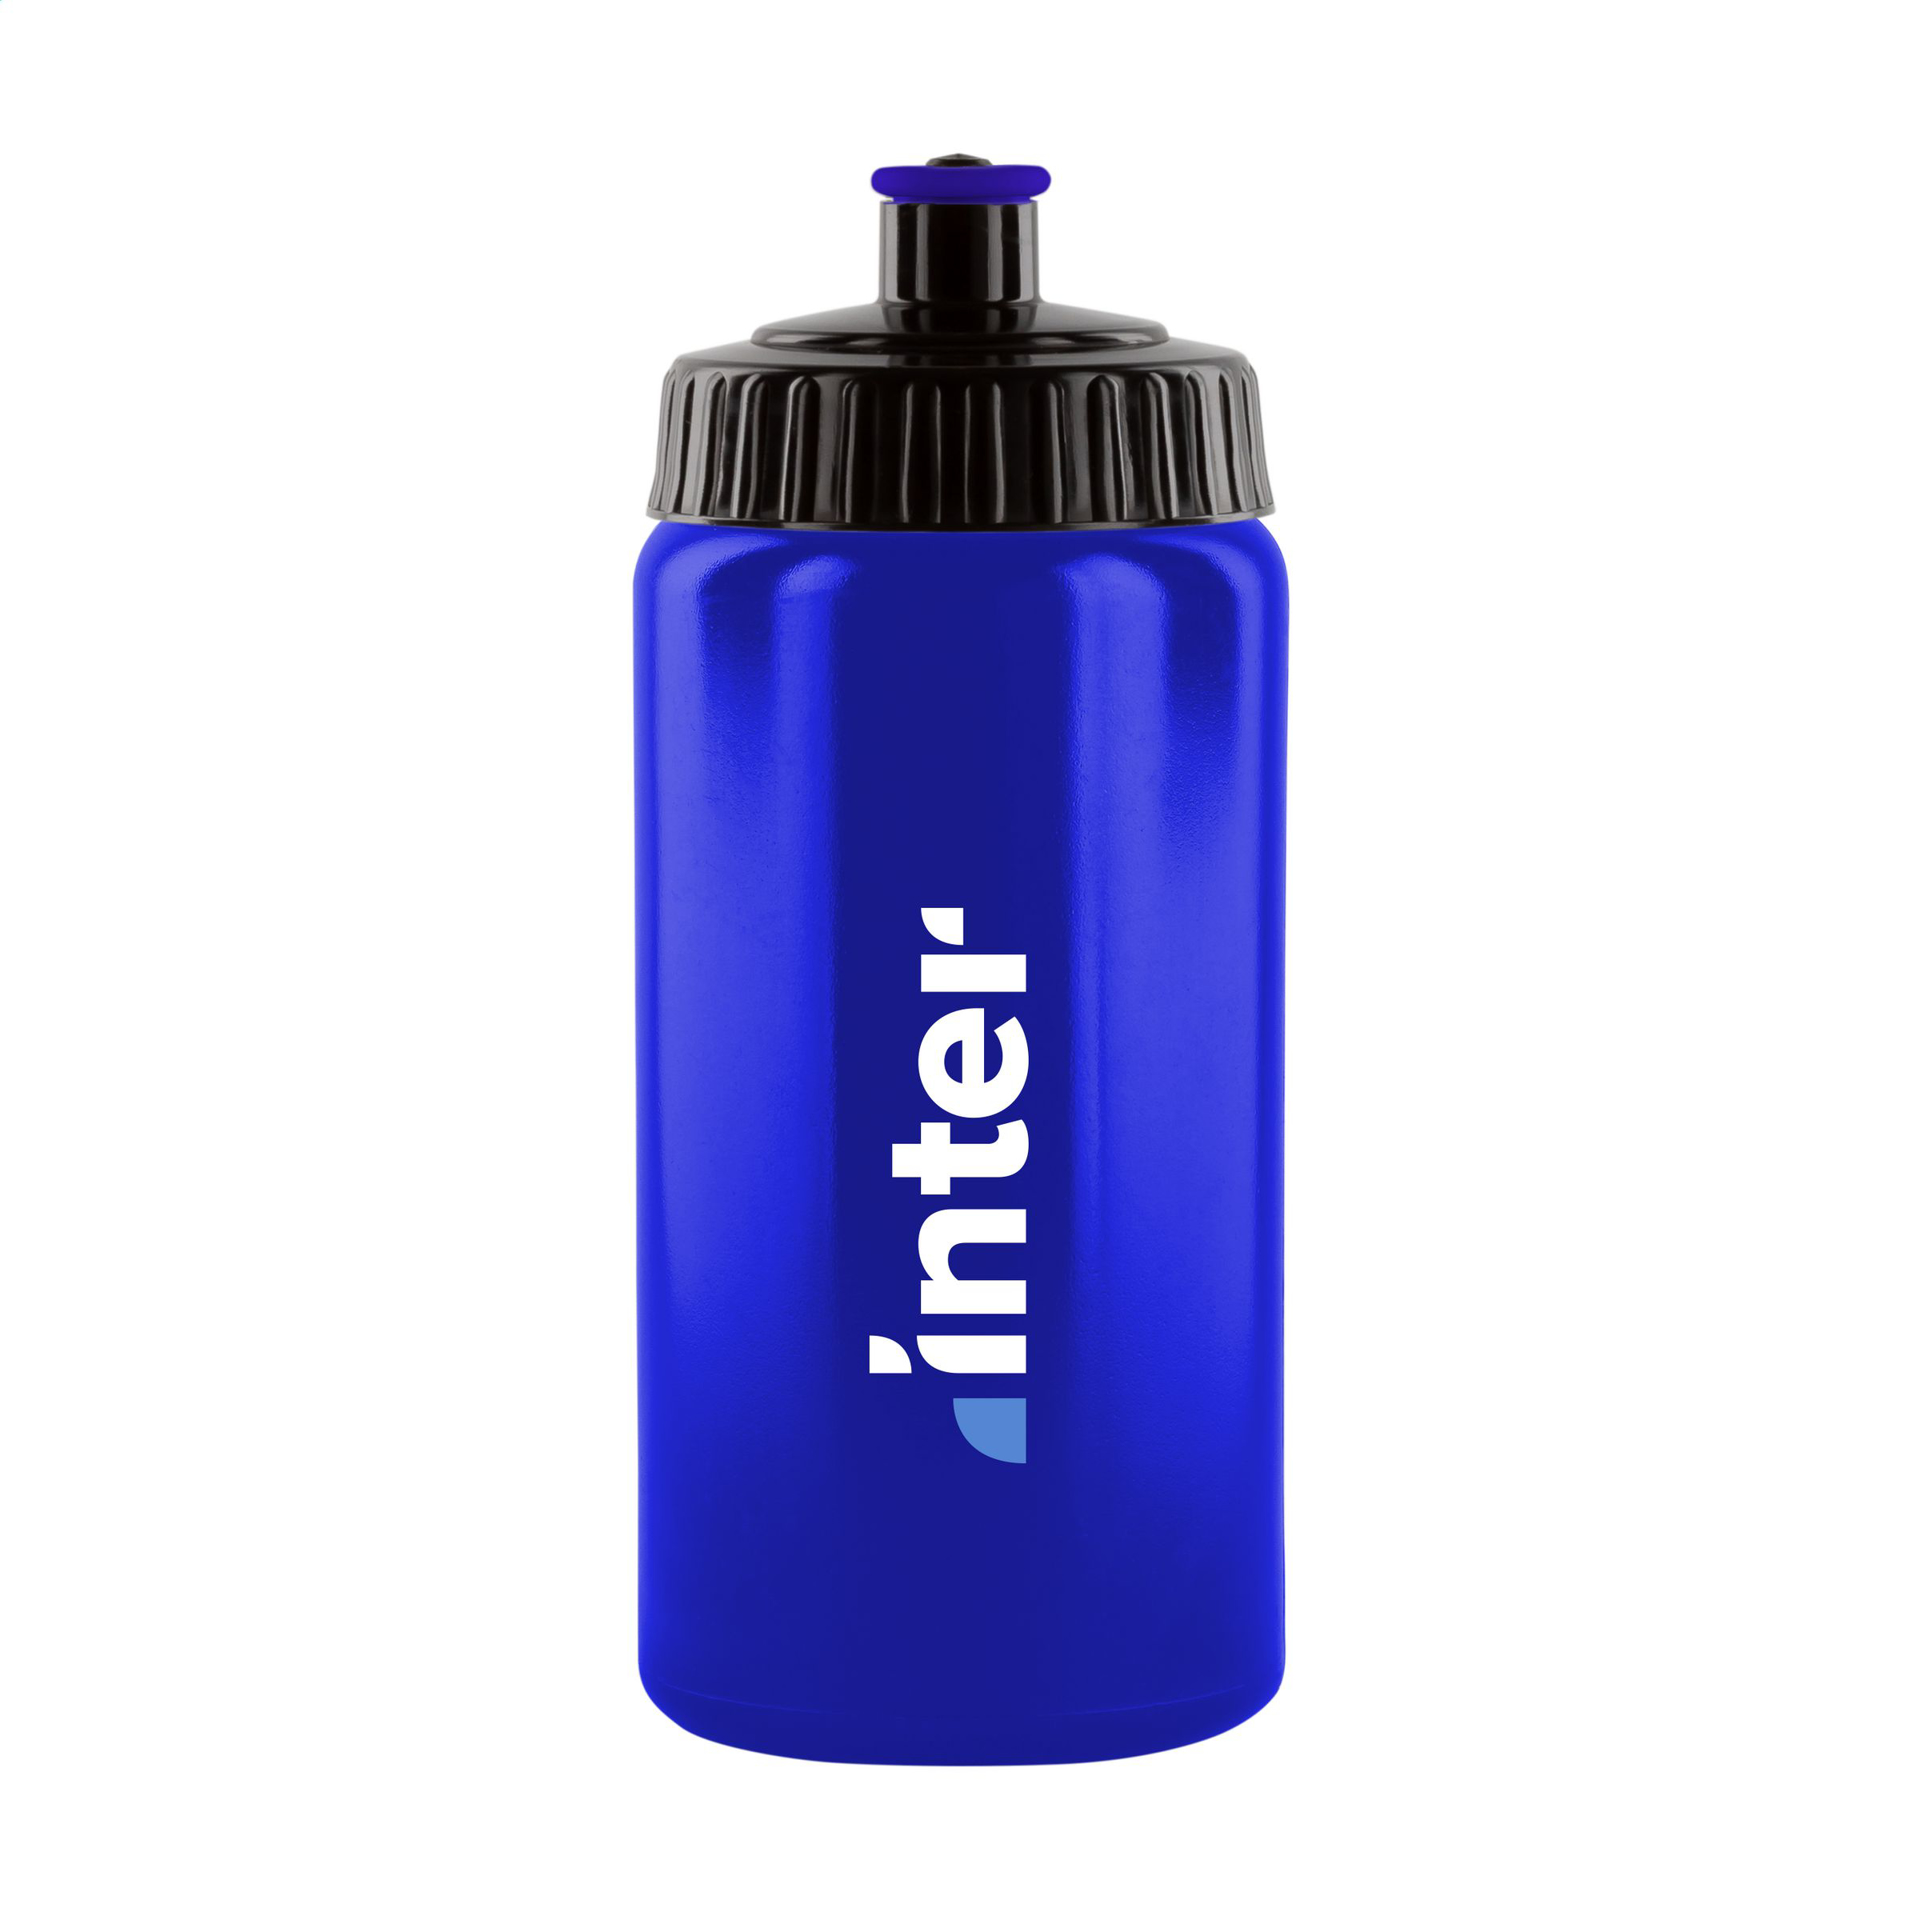 Recyclable Water Bottle 